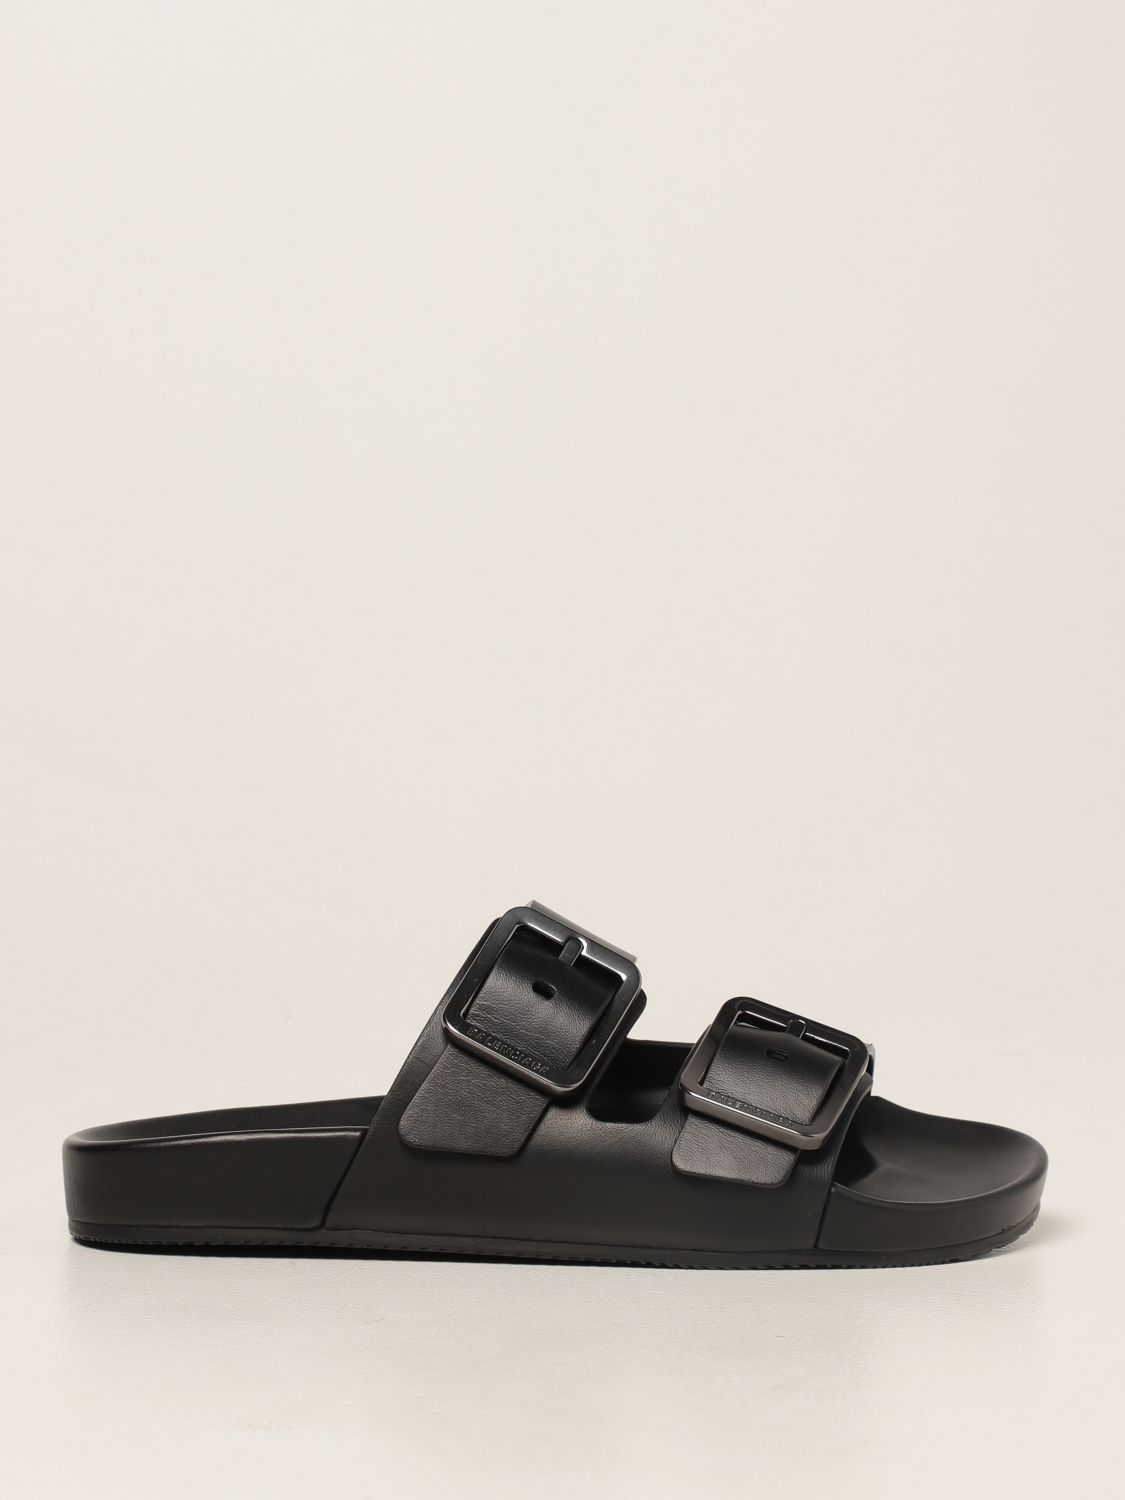 Sandalias planas Balenciaga: Zapatos mujer Balenciaga negro 1